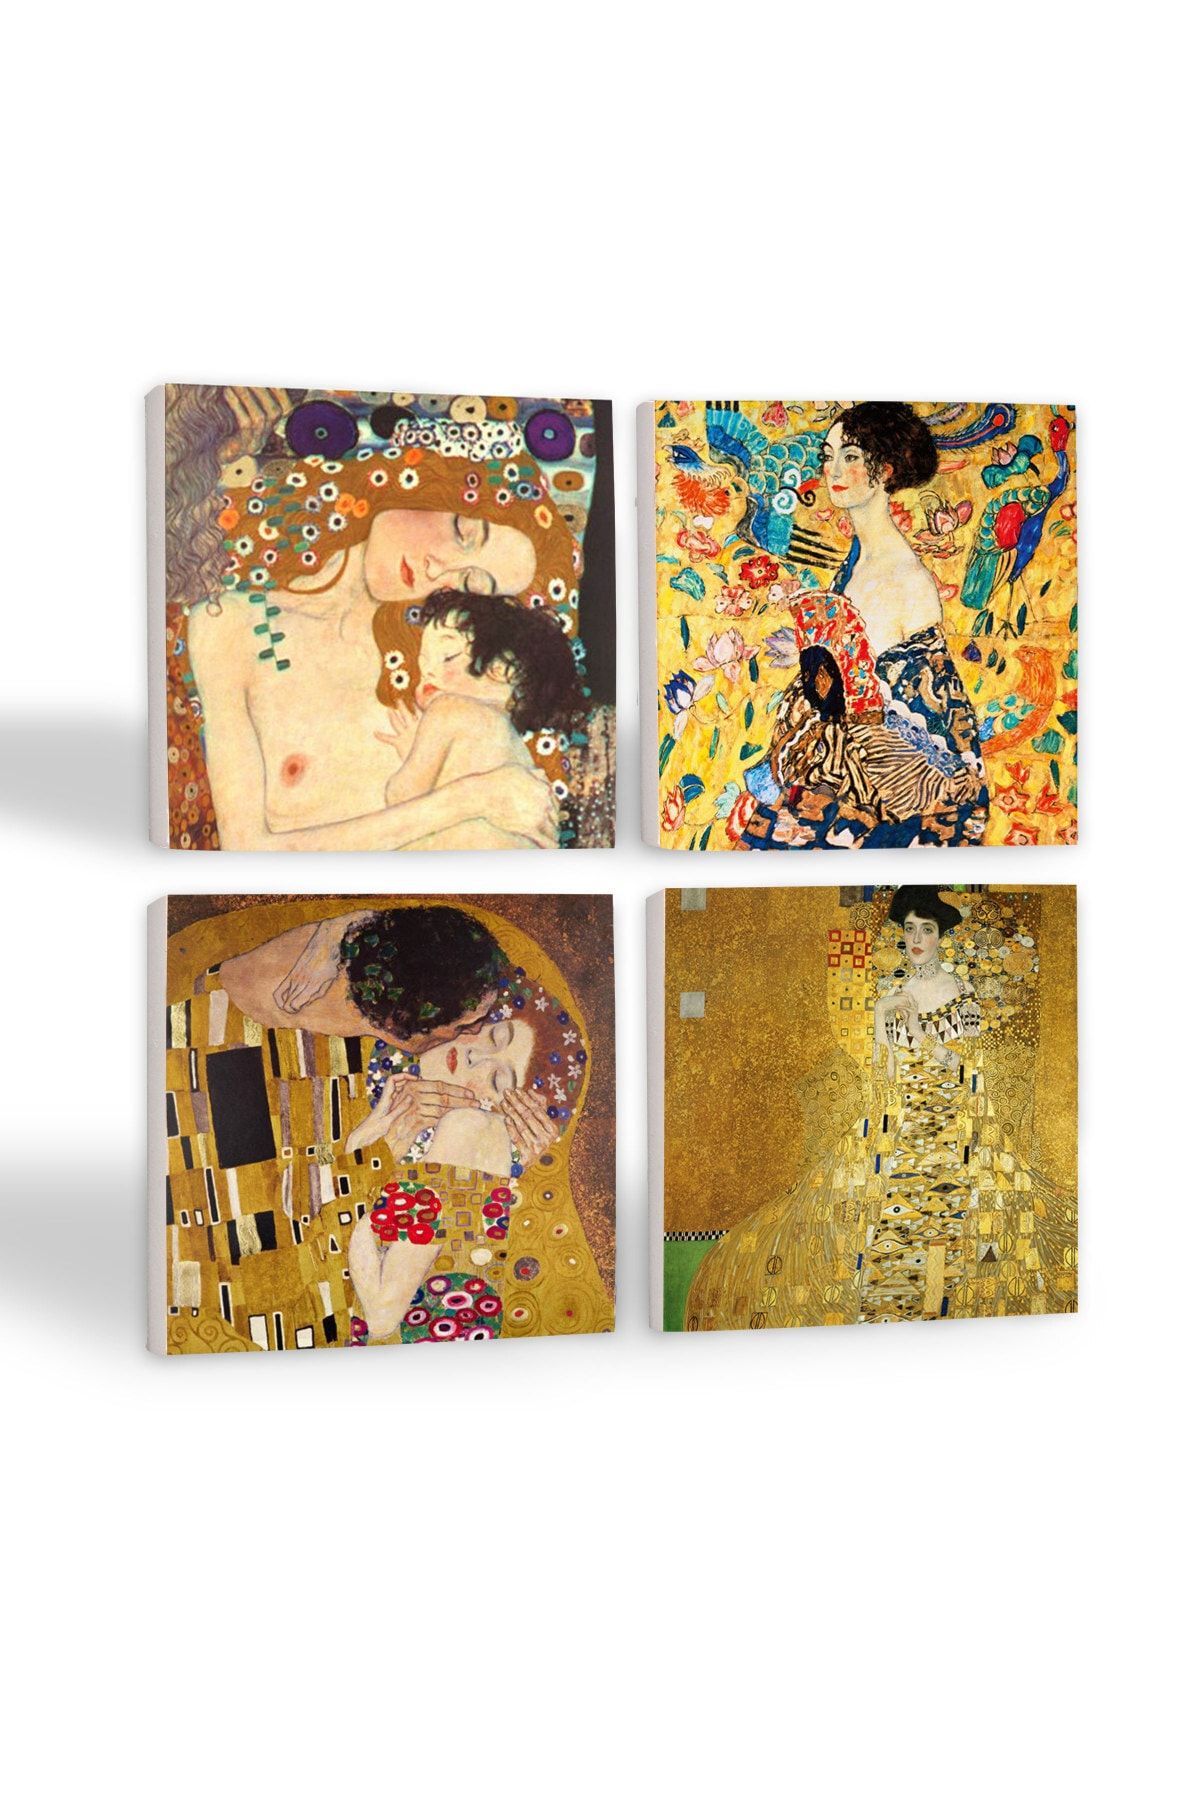 Pinecone Gustav Klimt Yelpazeli Kadın, Adele Bloch-bauer'in Portresi, Anne Çocuk, Öpücük Taş Bardak Altlığı